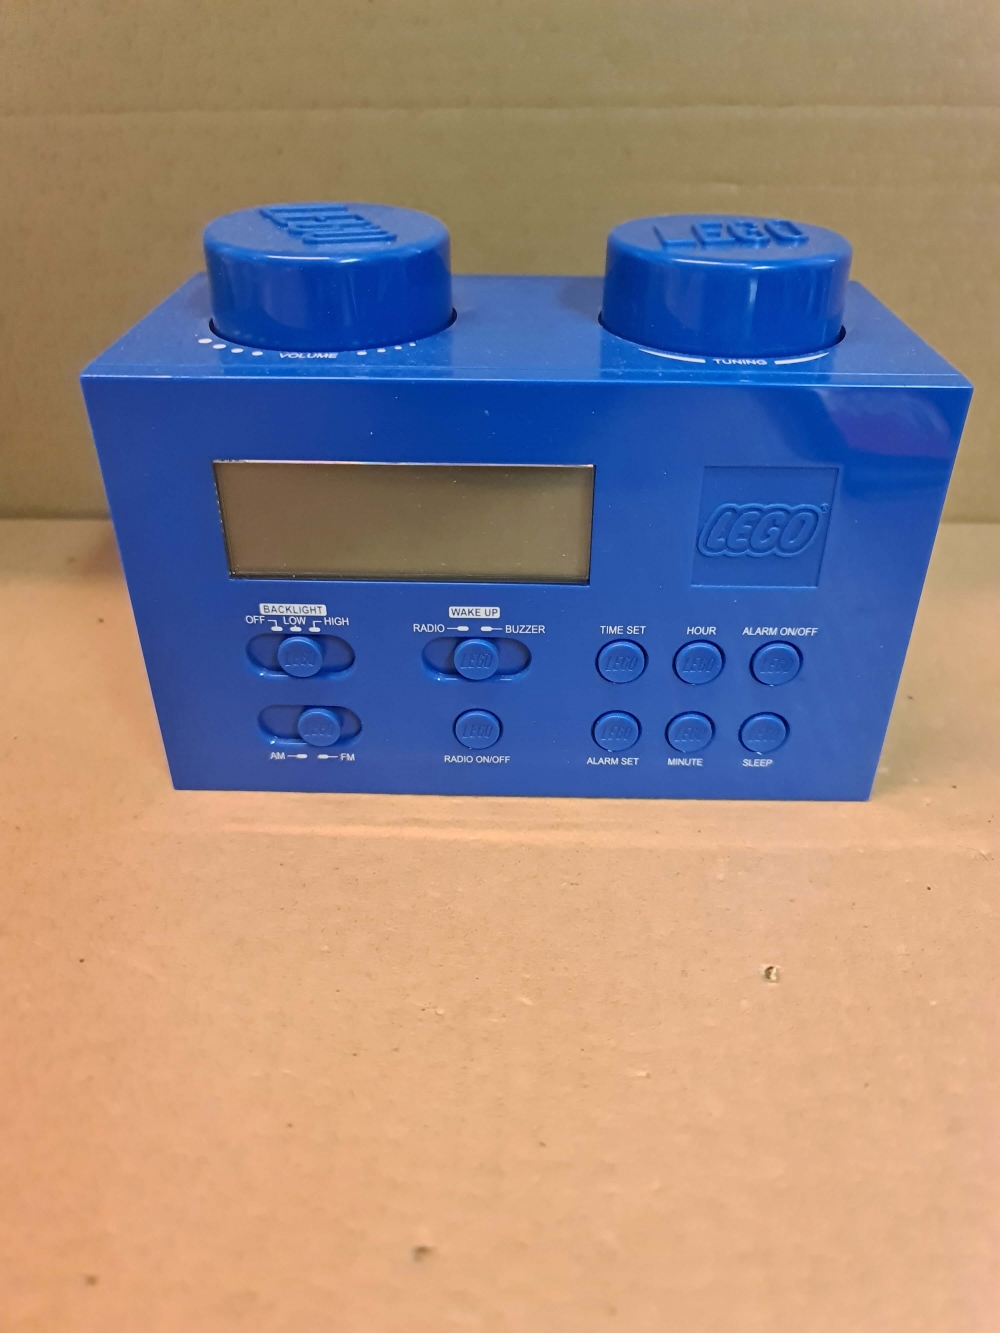 Fm radio fra Lego.
I god stand. Mangler ett klistremerke bak.